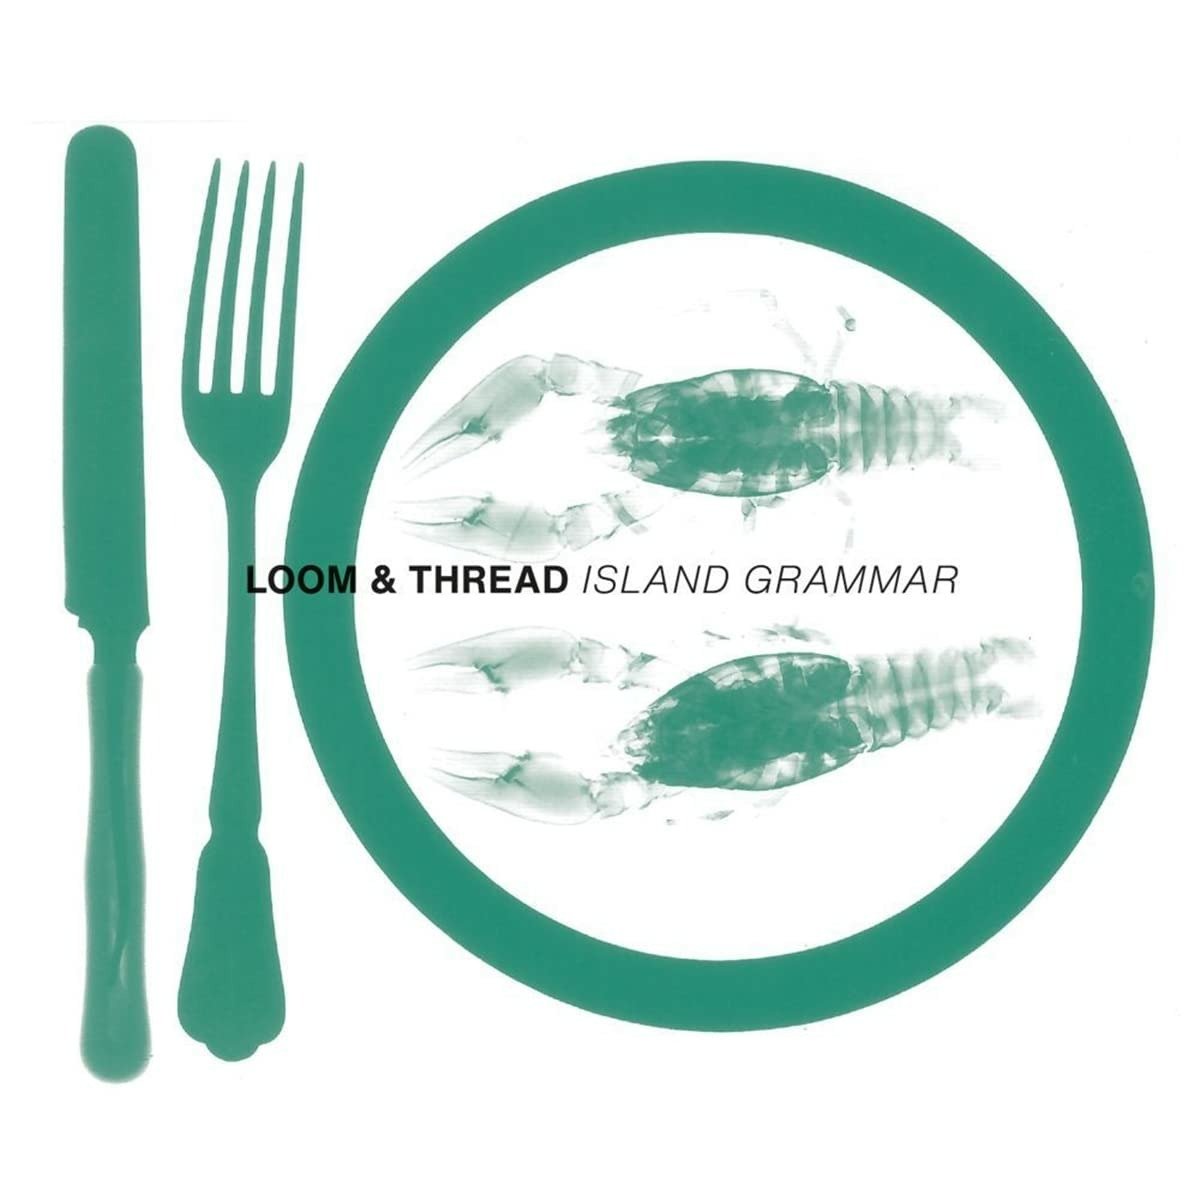 CD Shop - LOOM & THREAD ISLAND GRAMMAR